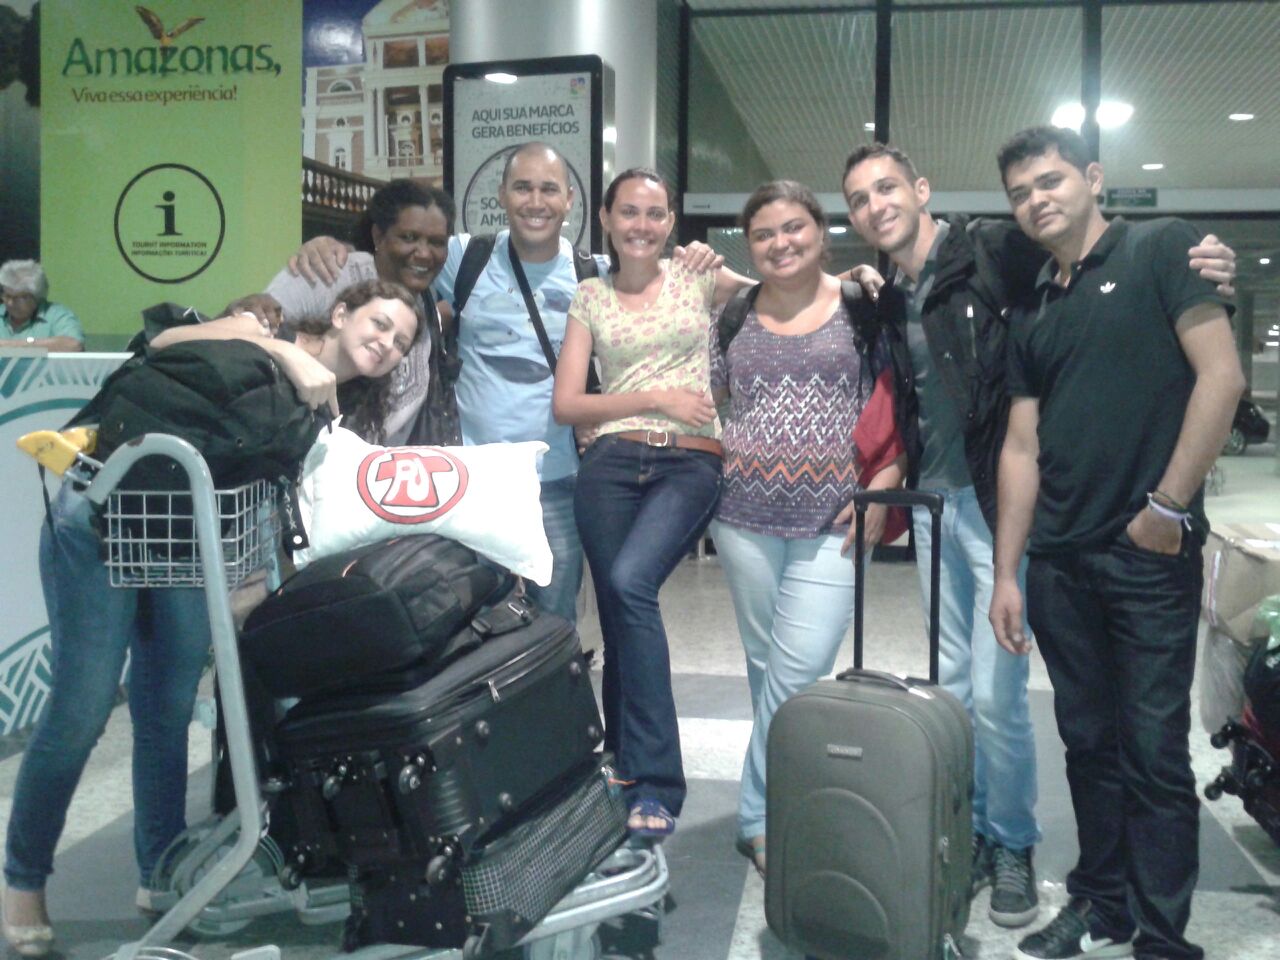  Jovens começam chegar em Manaus